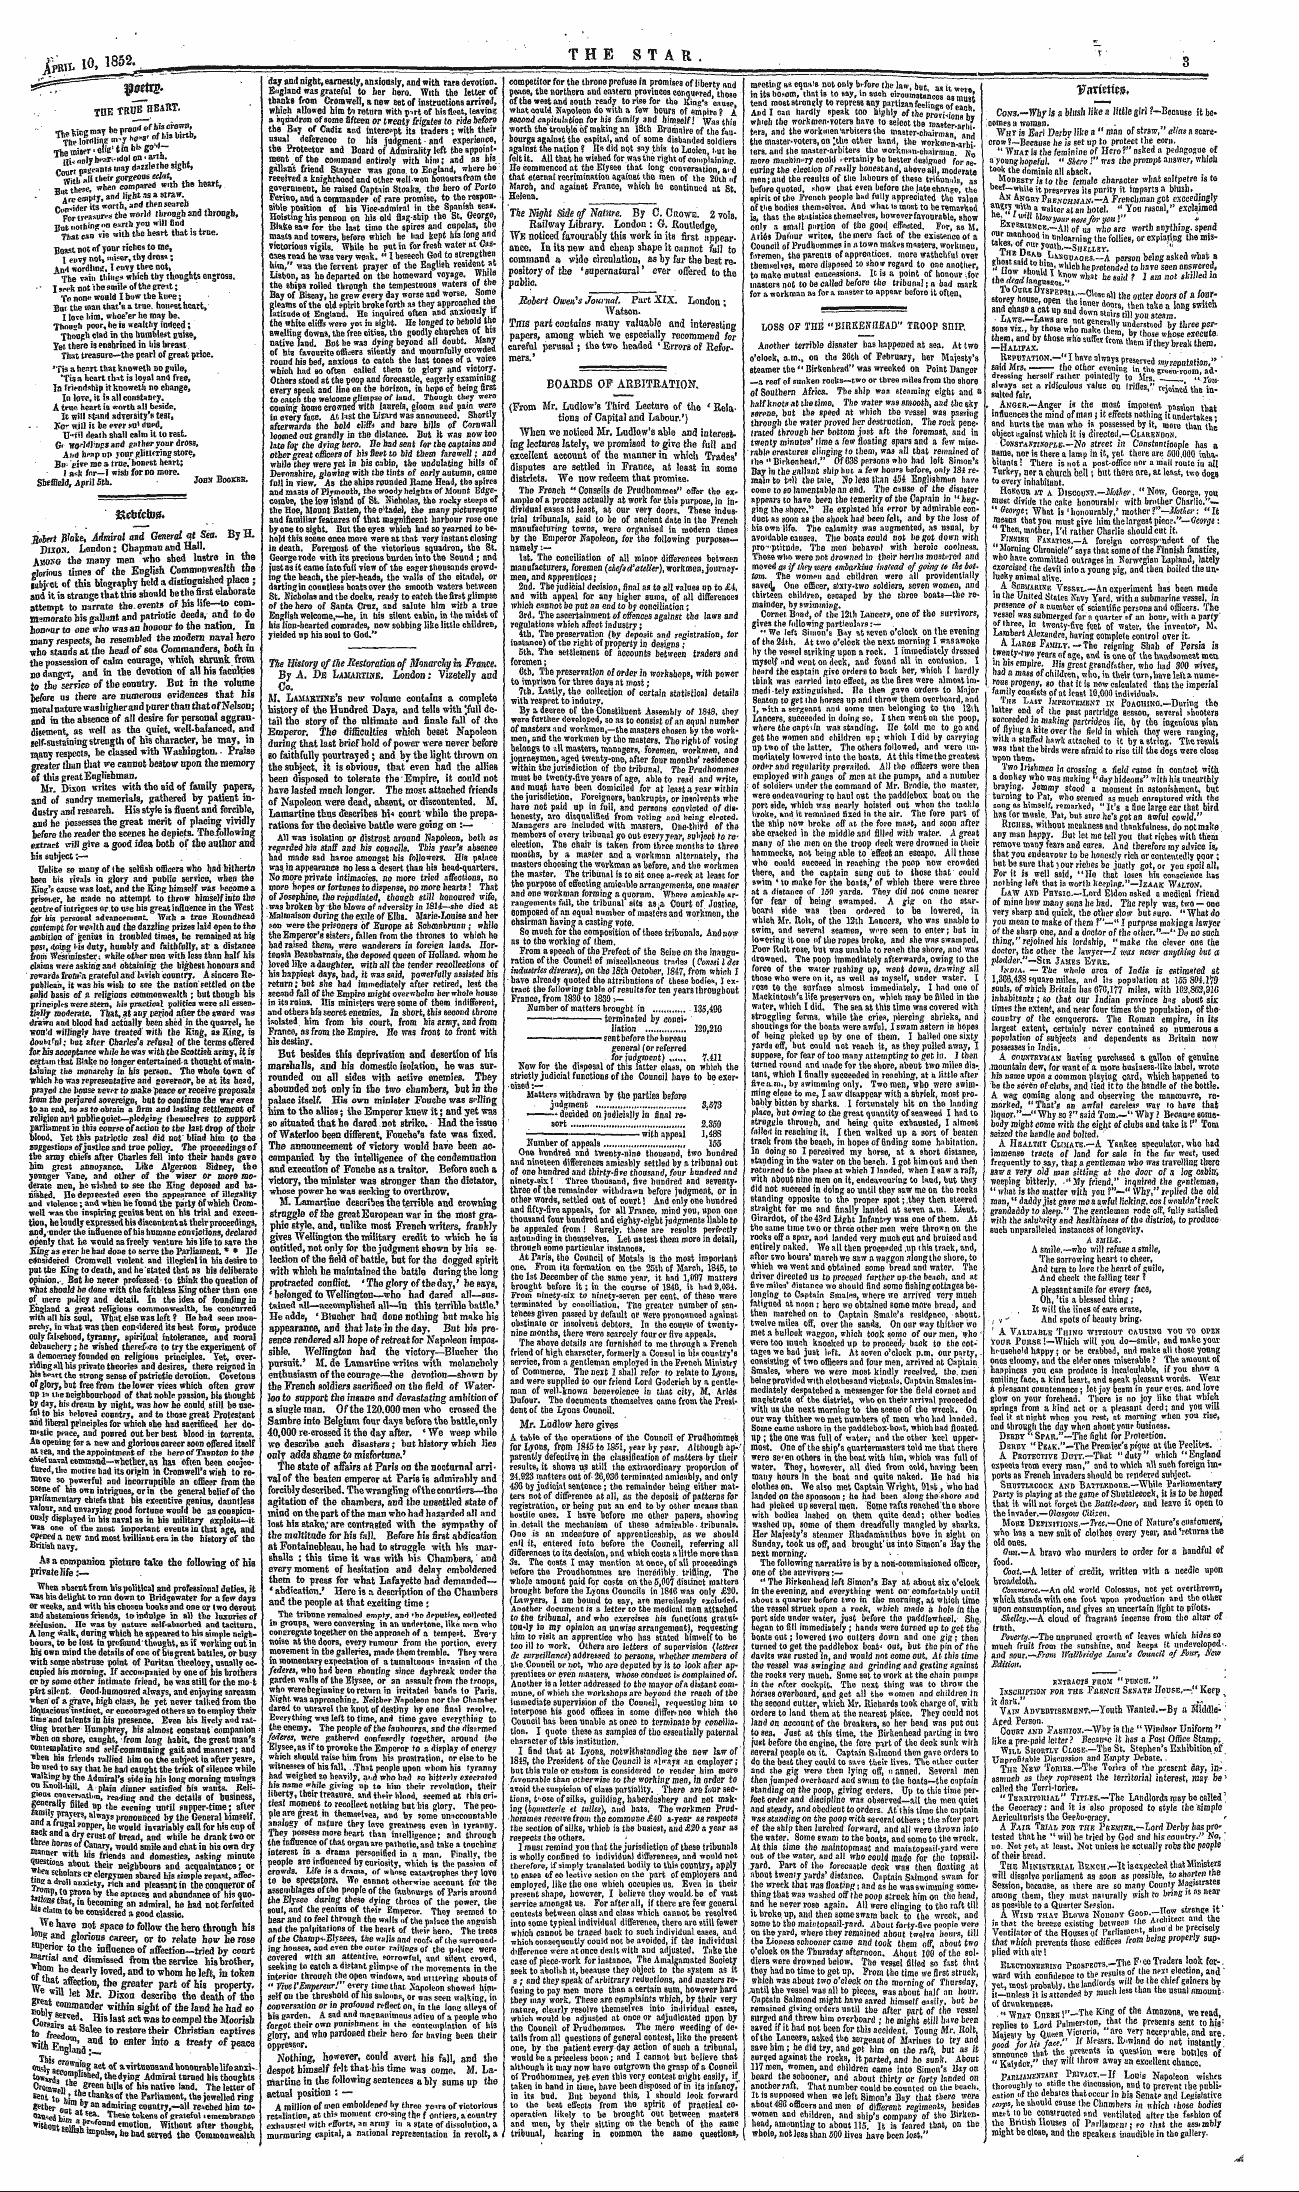 Northern Star (1837-1852): jS F Y, 2nd edition - Kcbicbsn